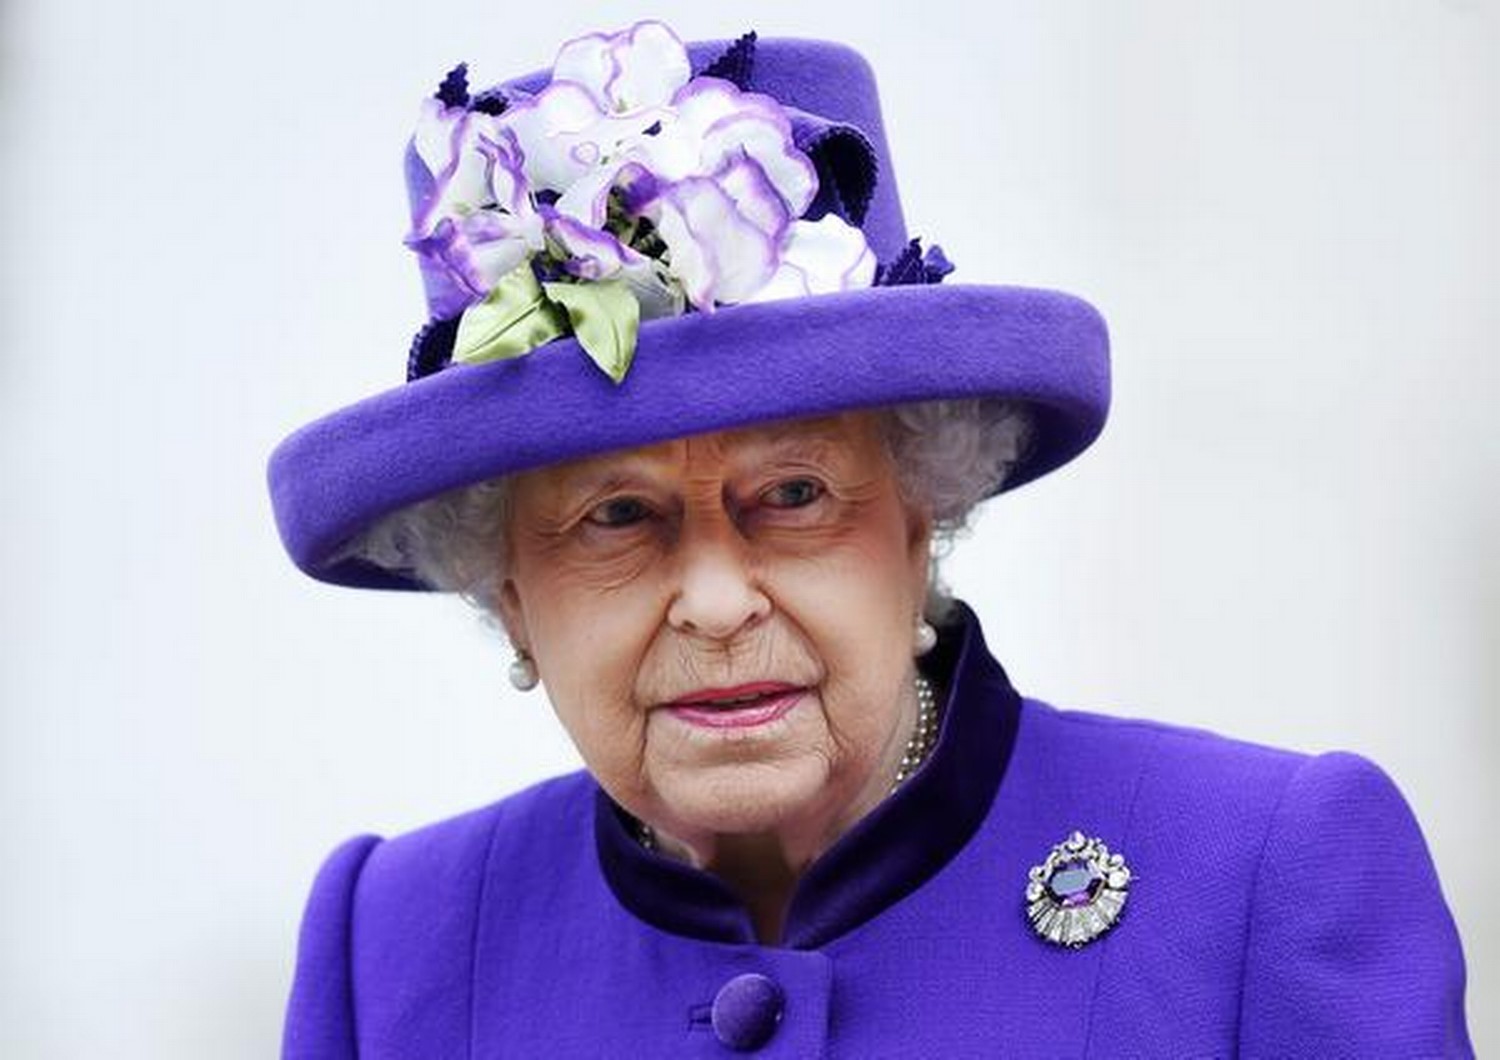 Kraliçe Elizabeth’in ölüm tarihini bilen hesap Kral Charles için de tarih verdi 51